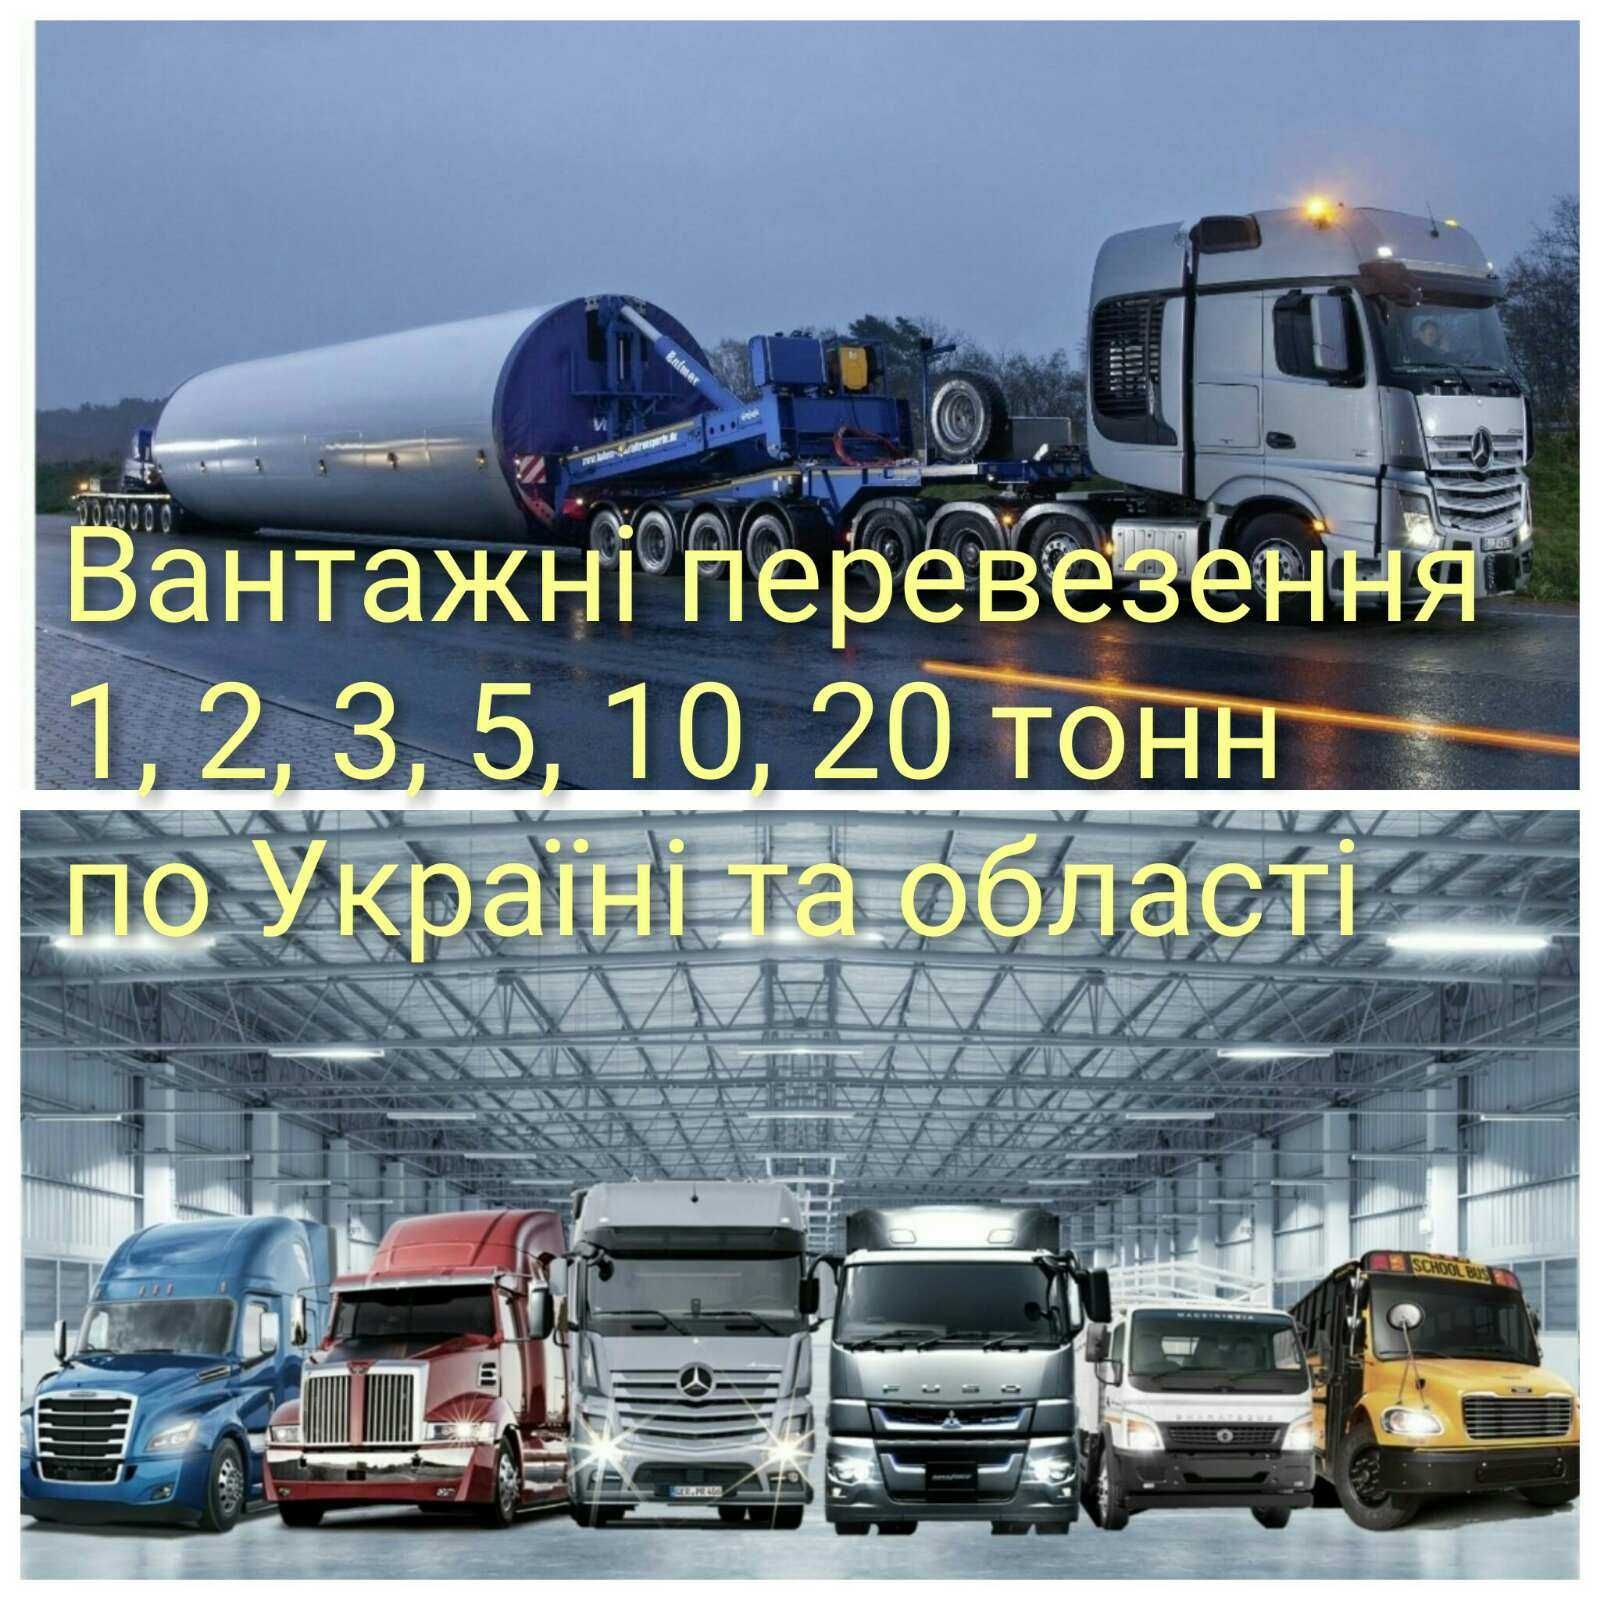 Попутна доставка вантажів по Україні, диспетчер.